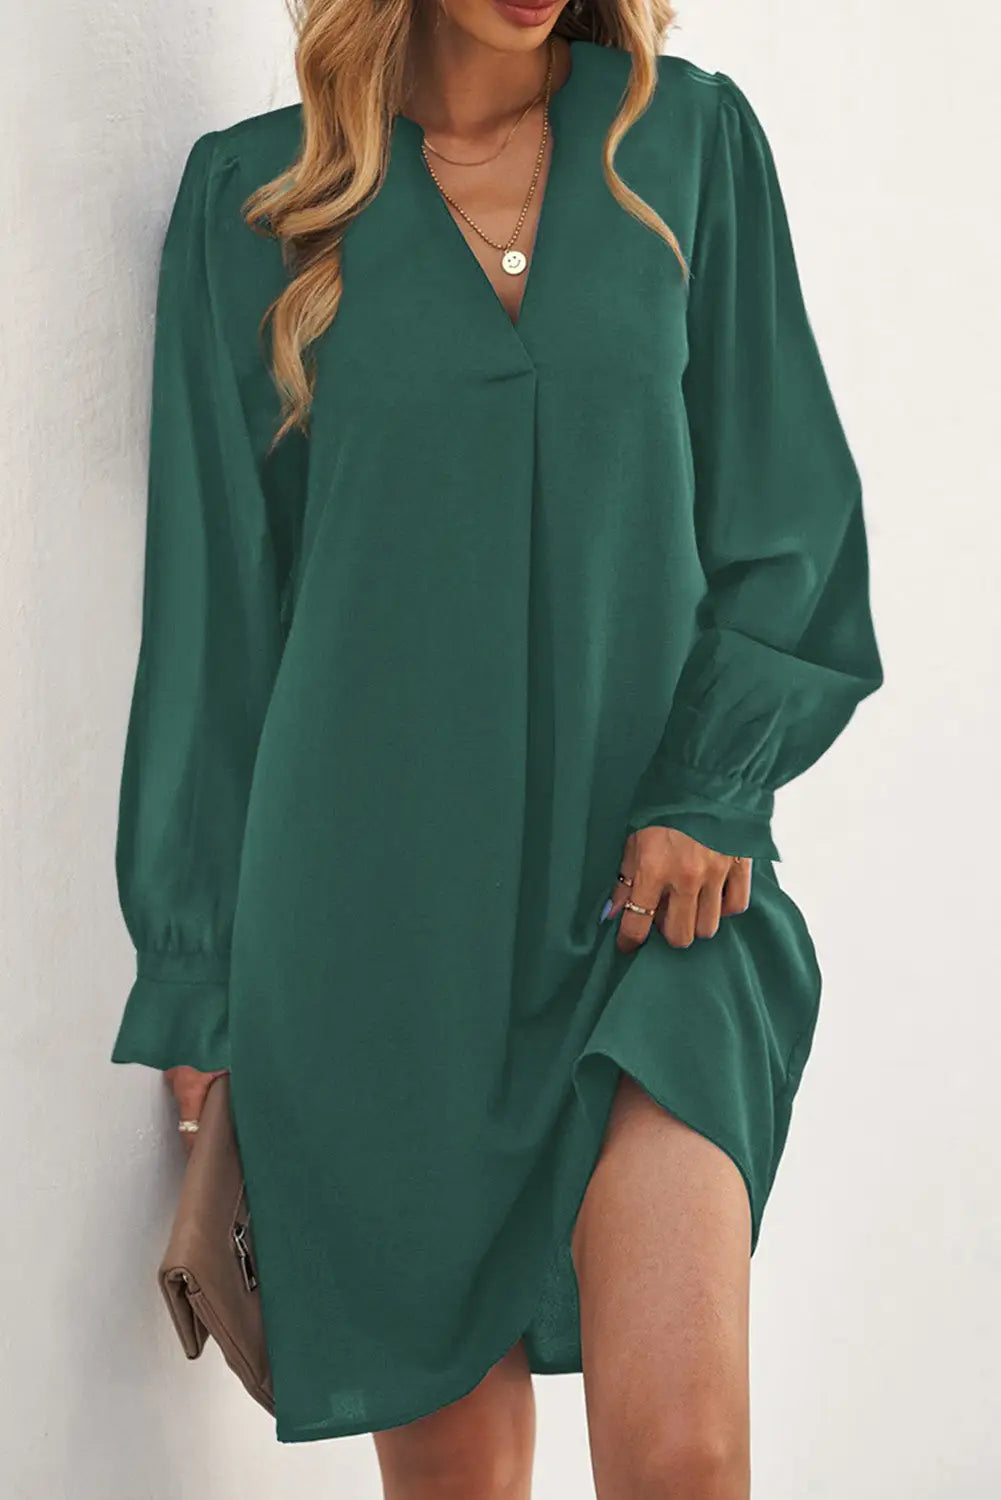 Shirt dress - green split v neck ruffled sleeves - green-2 / s / 100% polyester - mini dresses